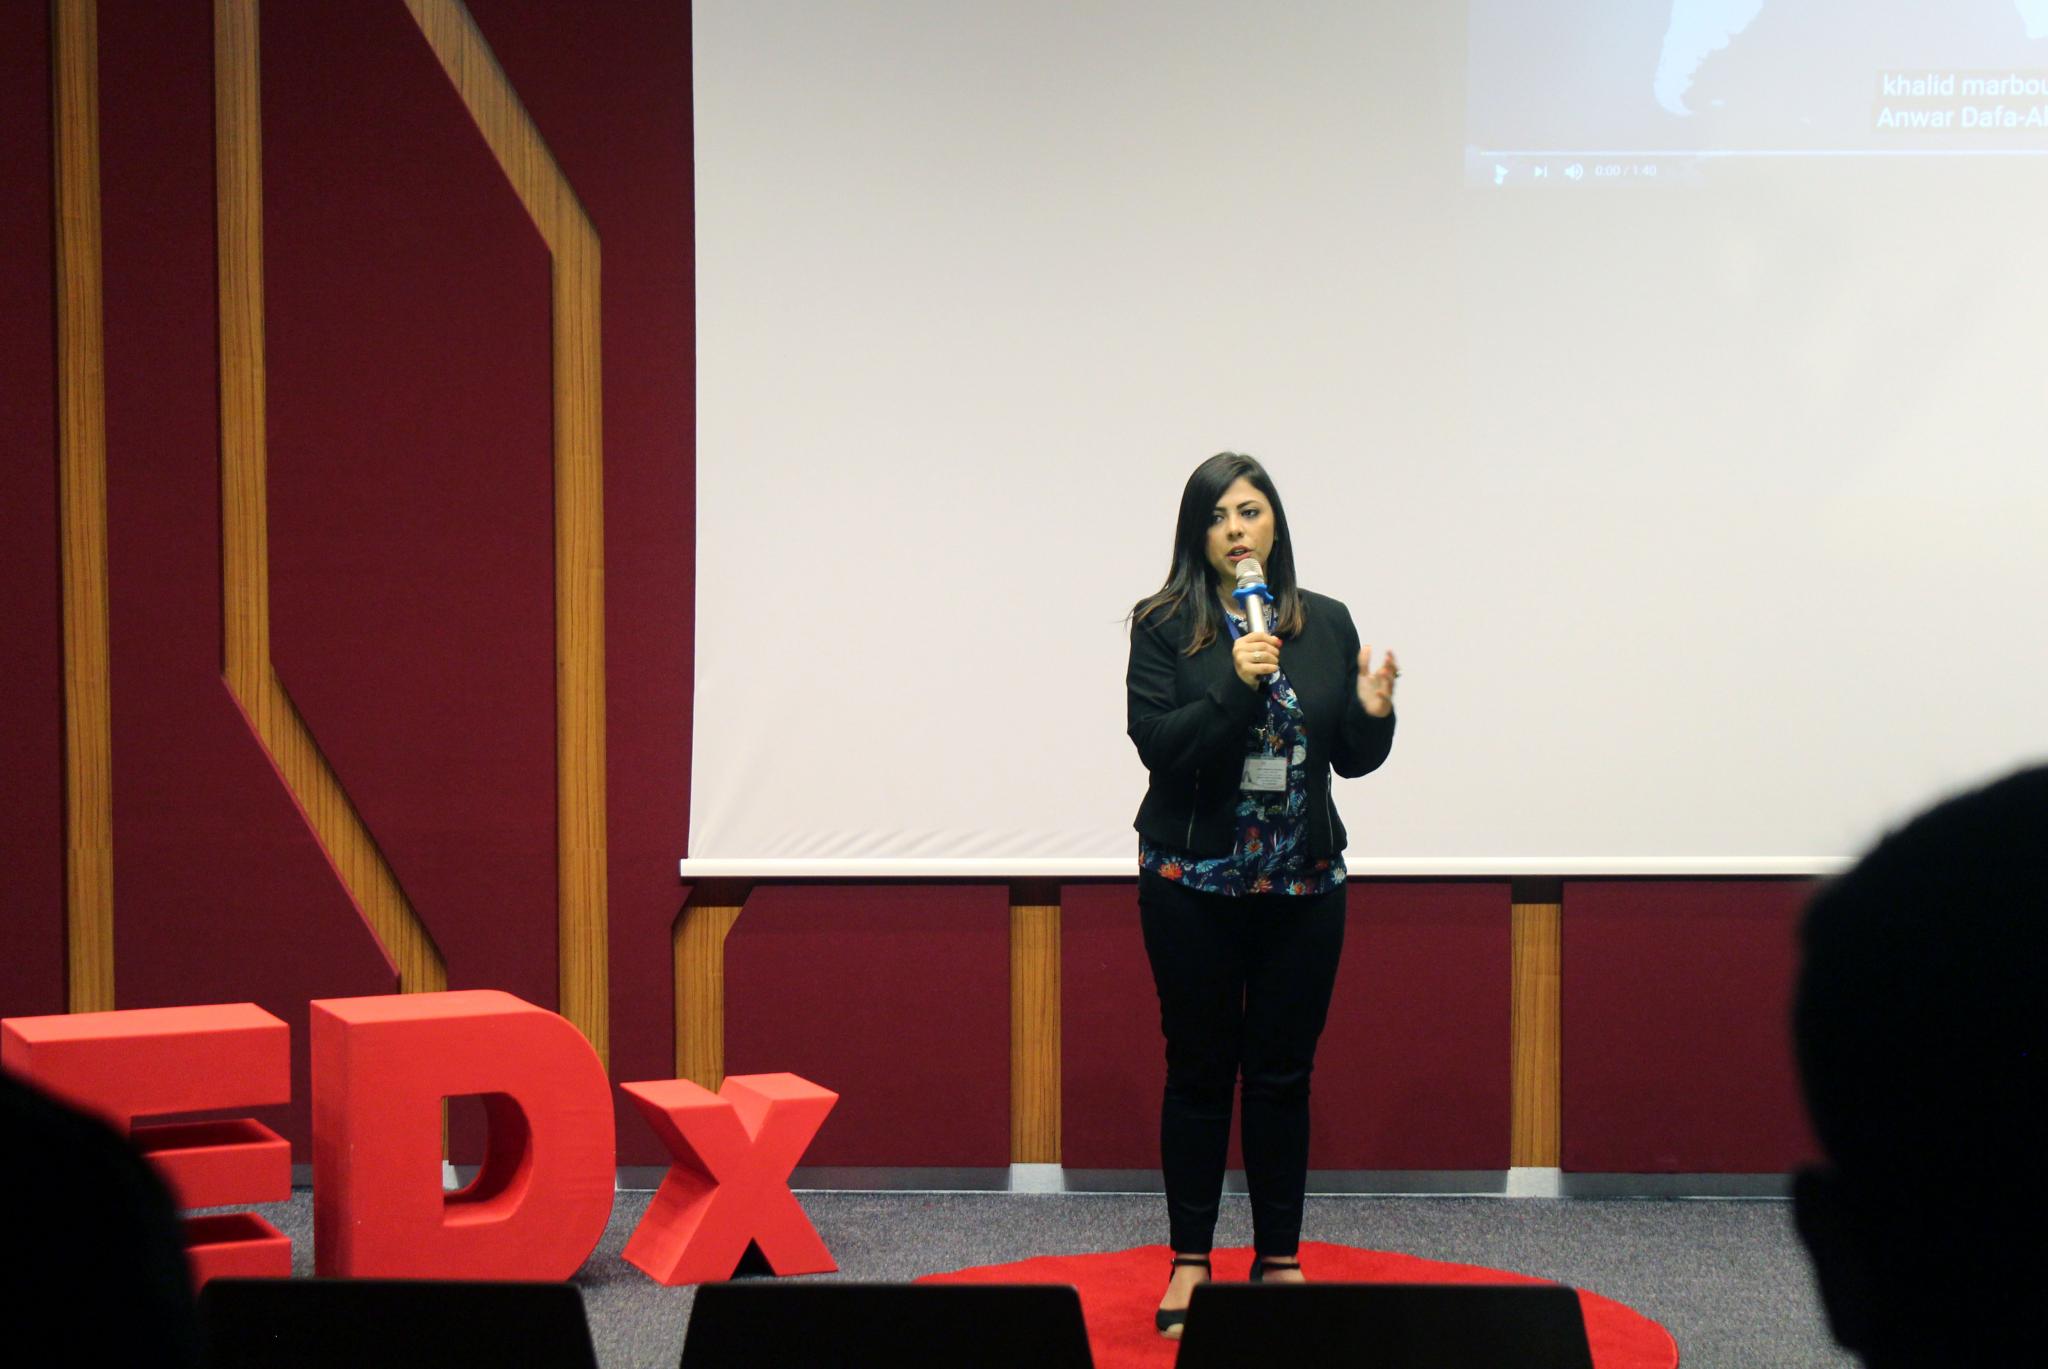 مؤتمر "تيد اكس" العالمي تحت عنوان "TEDx AAUJ"